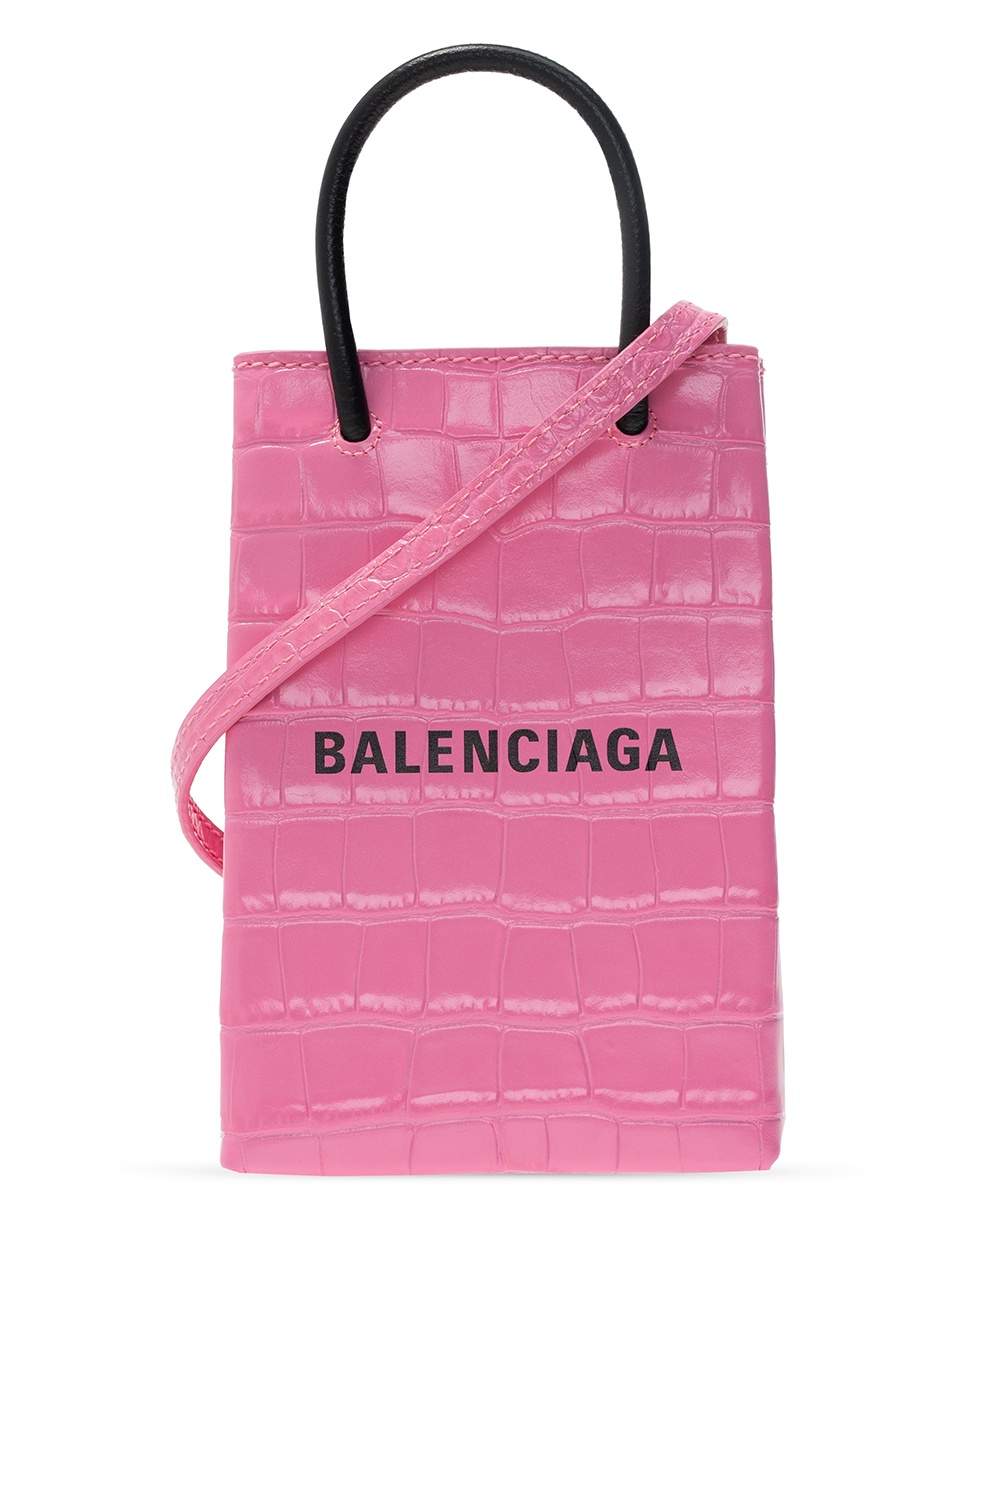 Balenciaga 'Shopping' phone holder | The Volon Roman Bags for